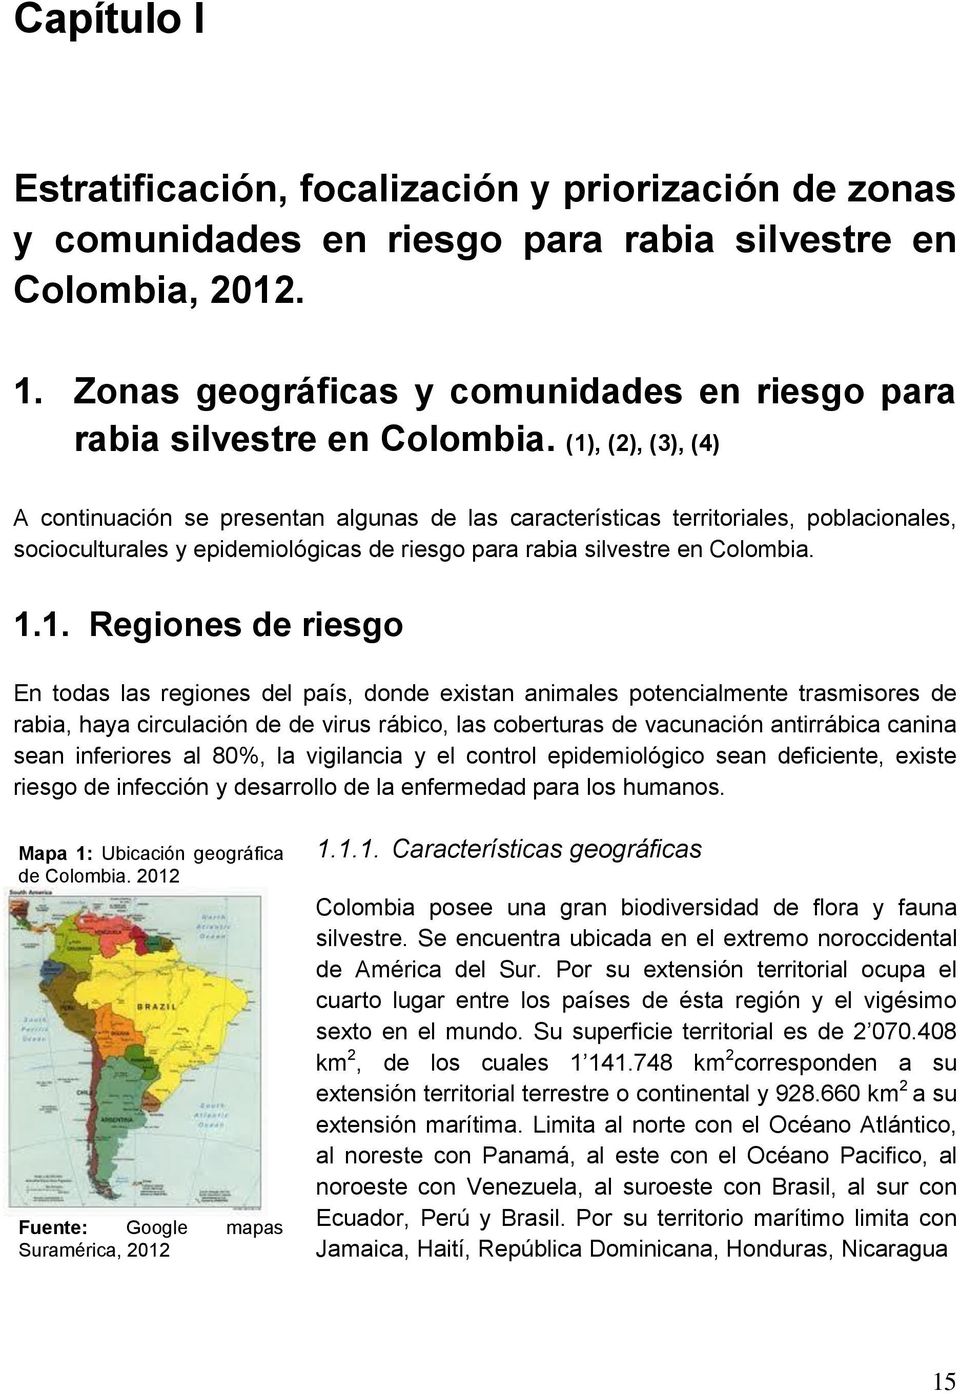 (1), (2), (3), (4) A continuación se presentan algunas de las características territoriales, poblacionales, socioculturales y epidemiológicas de riesgo para rabia silvestre en Colombia. 1.1. Regiones